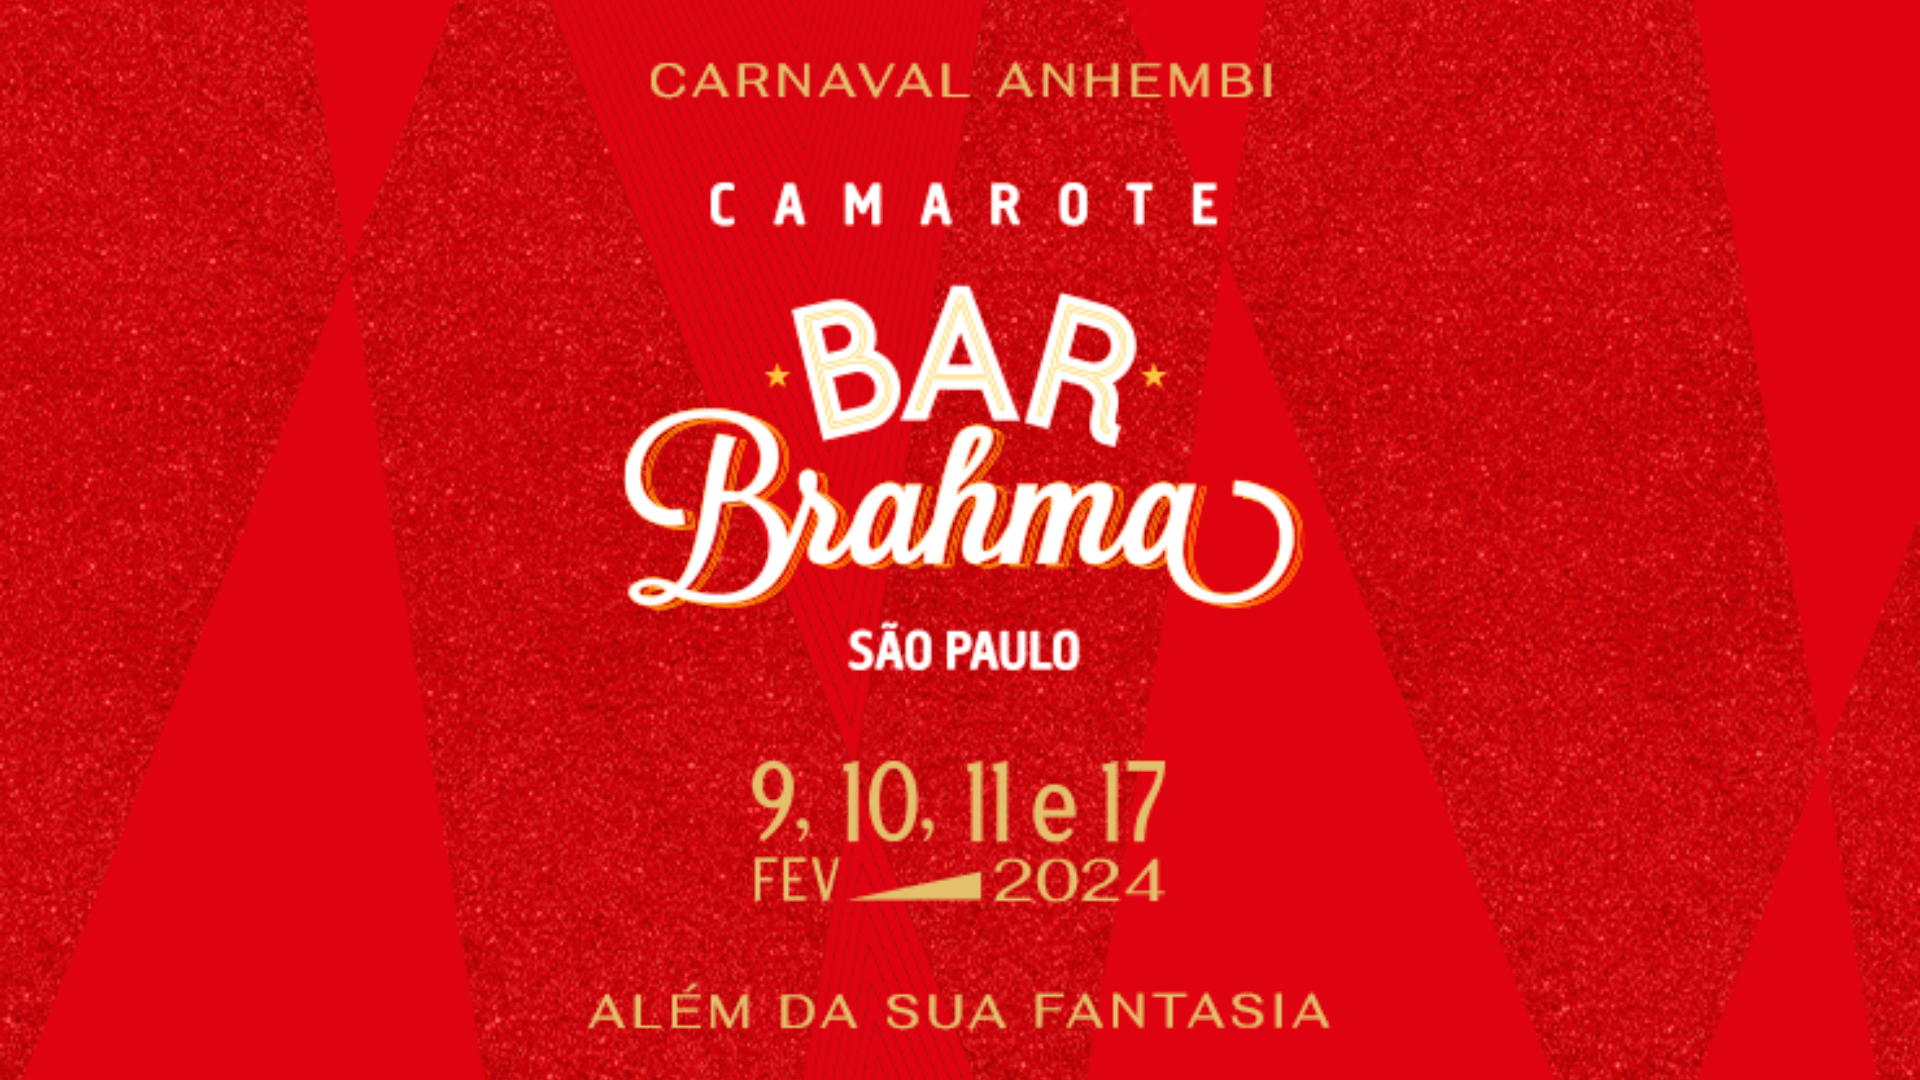 Camarote Bar Brahma lança app para credenciamento antecipado no Carnaval